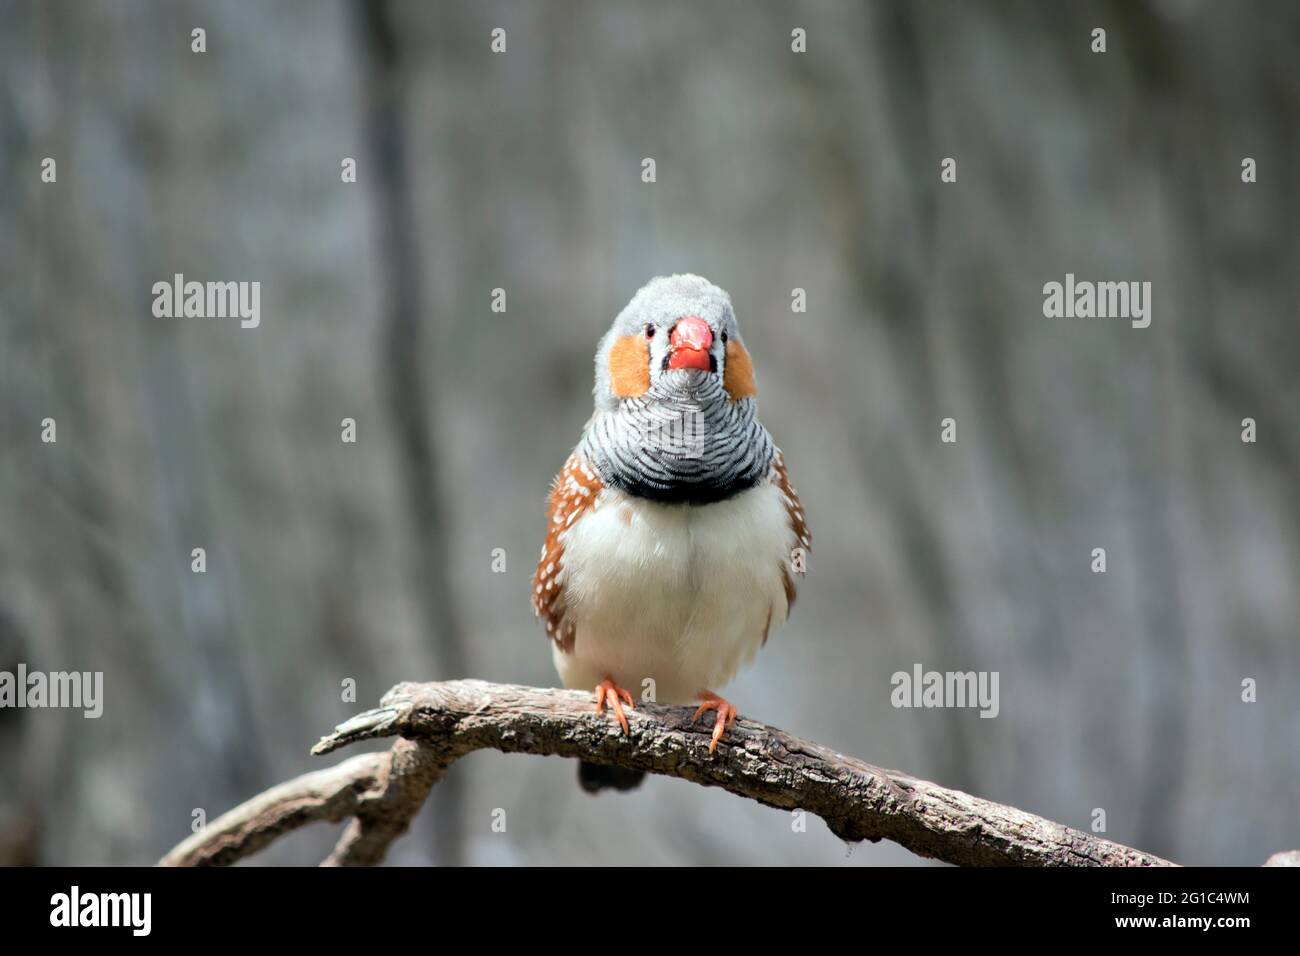 Der Zebrafink ist ein farbenfroher Vogel mit einem orangen Schnabel, einer grauen Feder, braunen und weißen Flecken und einer orangen Wange Stockfoto